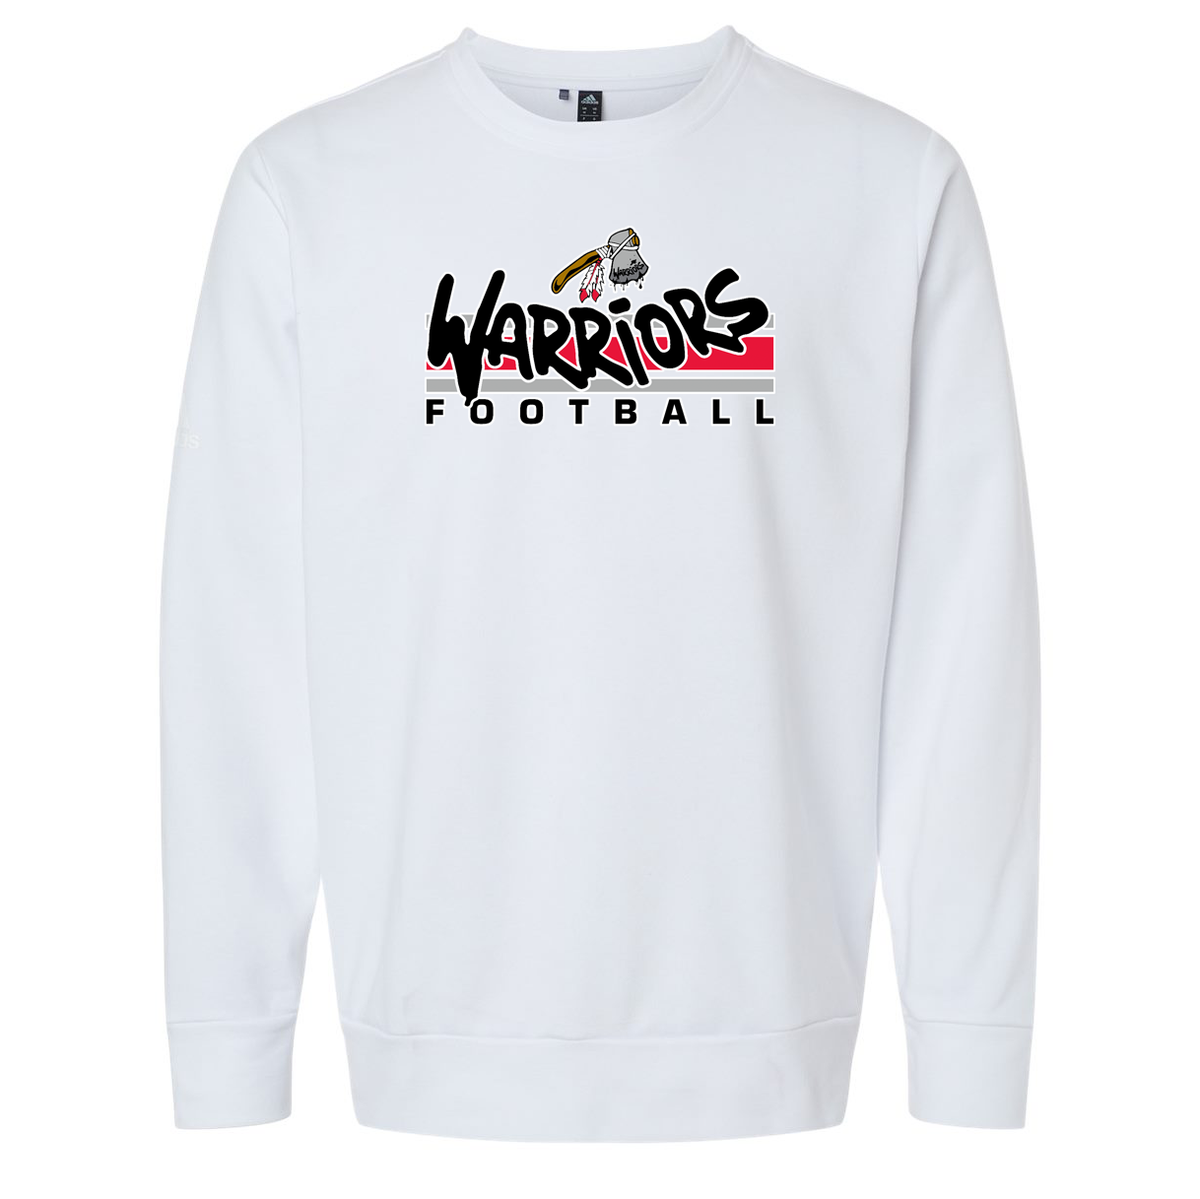 WV Warriors Football Adidas Fleece Crewneck Sweatshirt